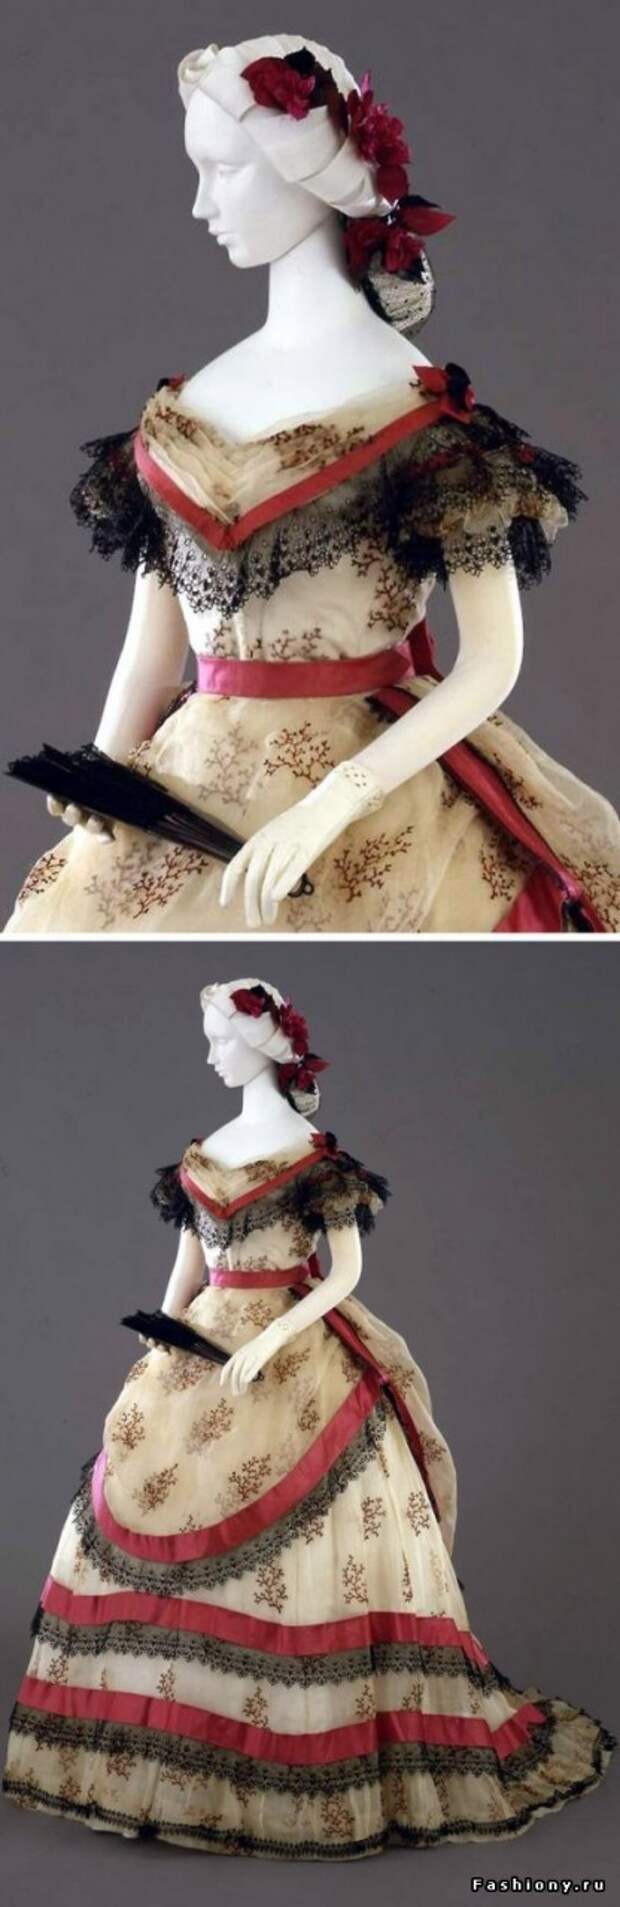 Бальное платье, Италия, 1869 г.